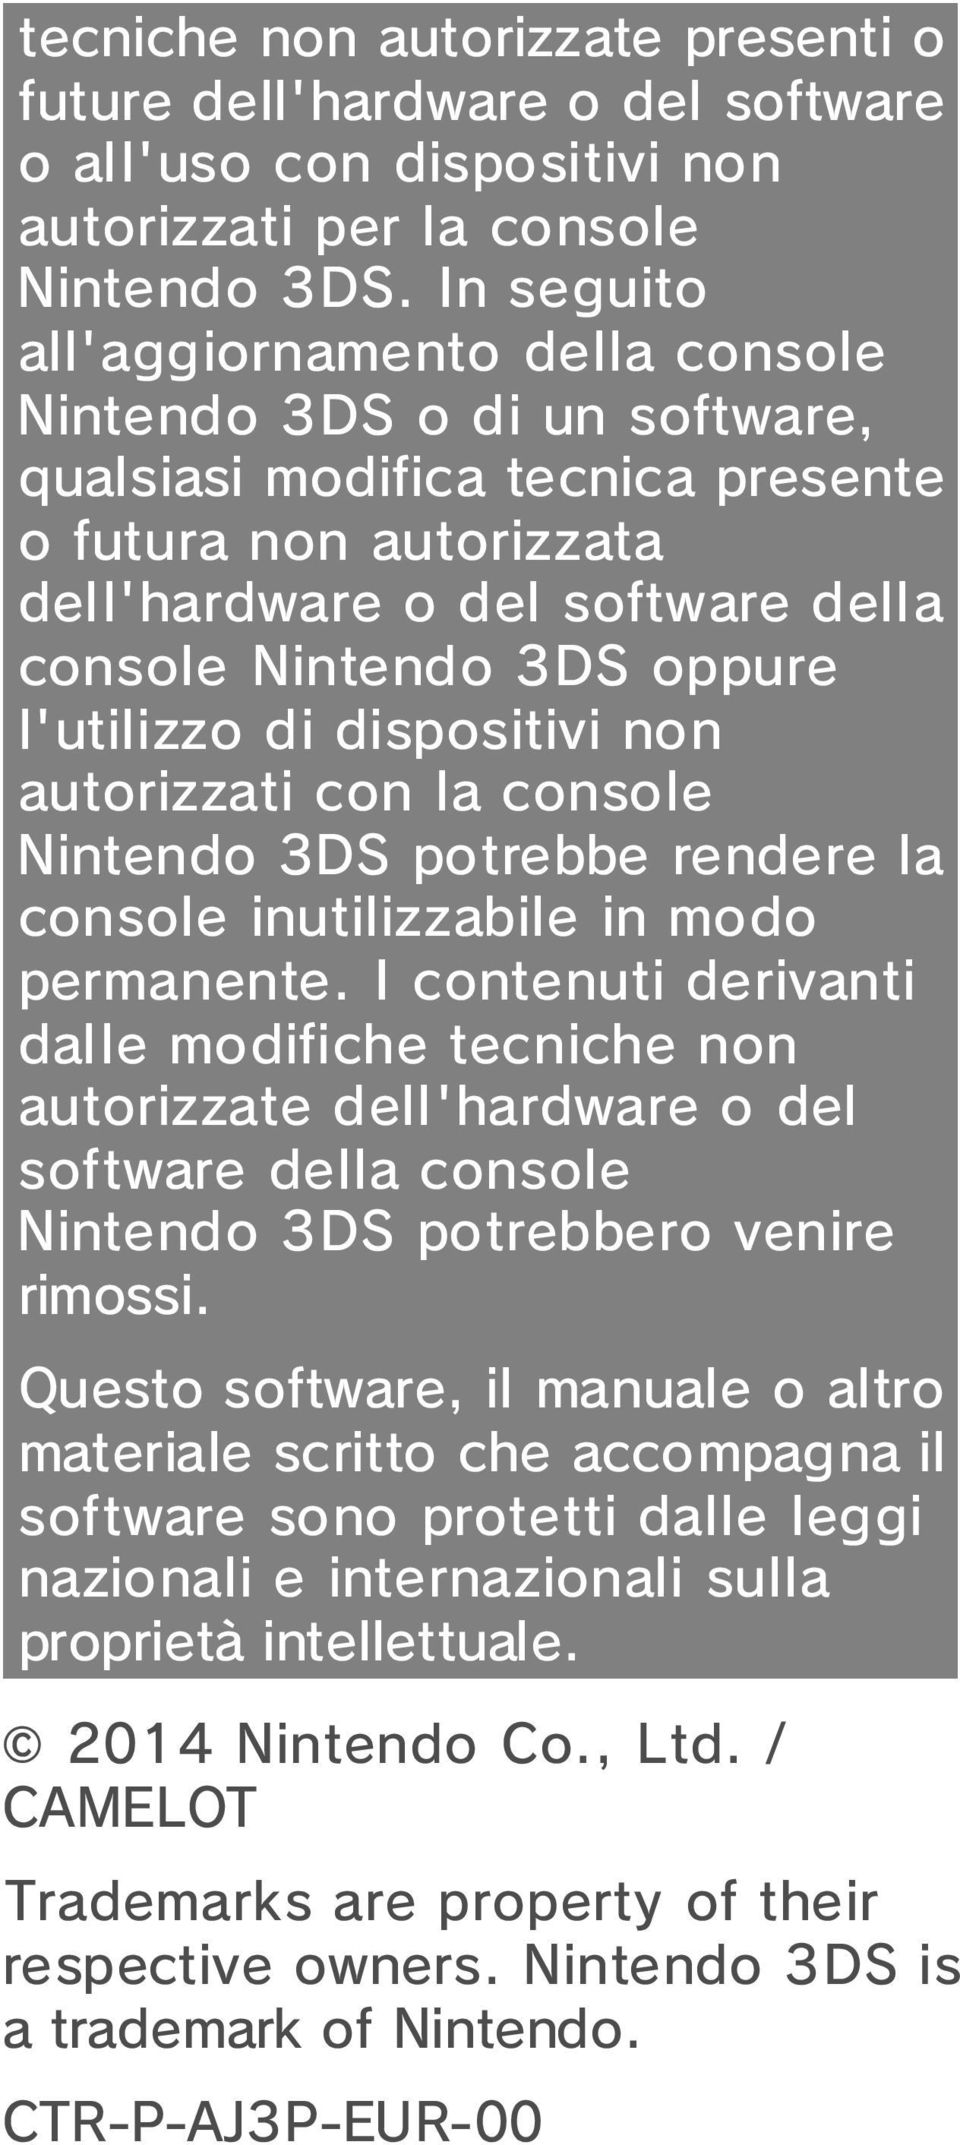 l'utilizzo di dispositivi non autorizzati con la console Nintendo 3DS potrebbe rendere la console inutilizzabile in modo permanente.